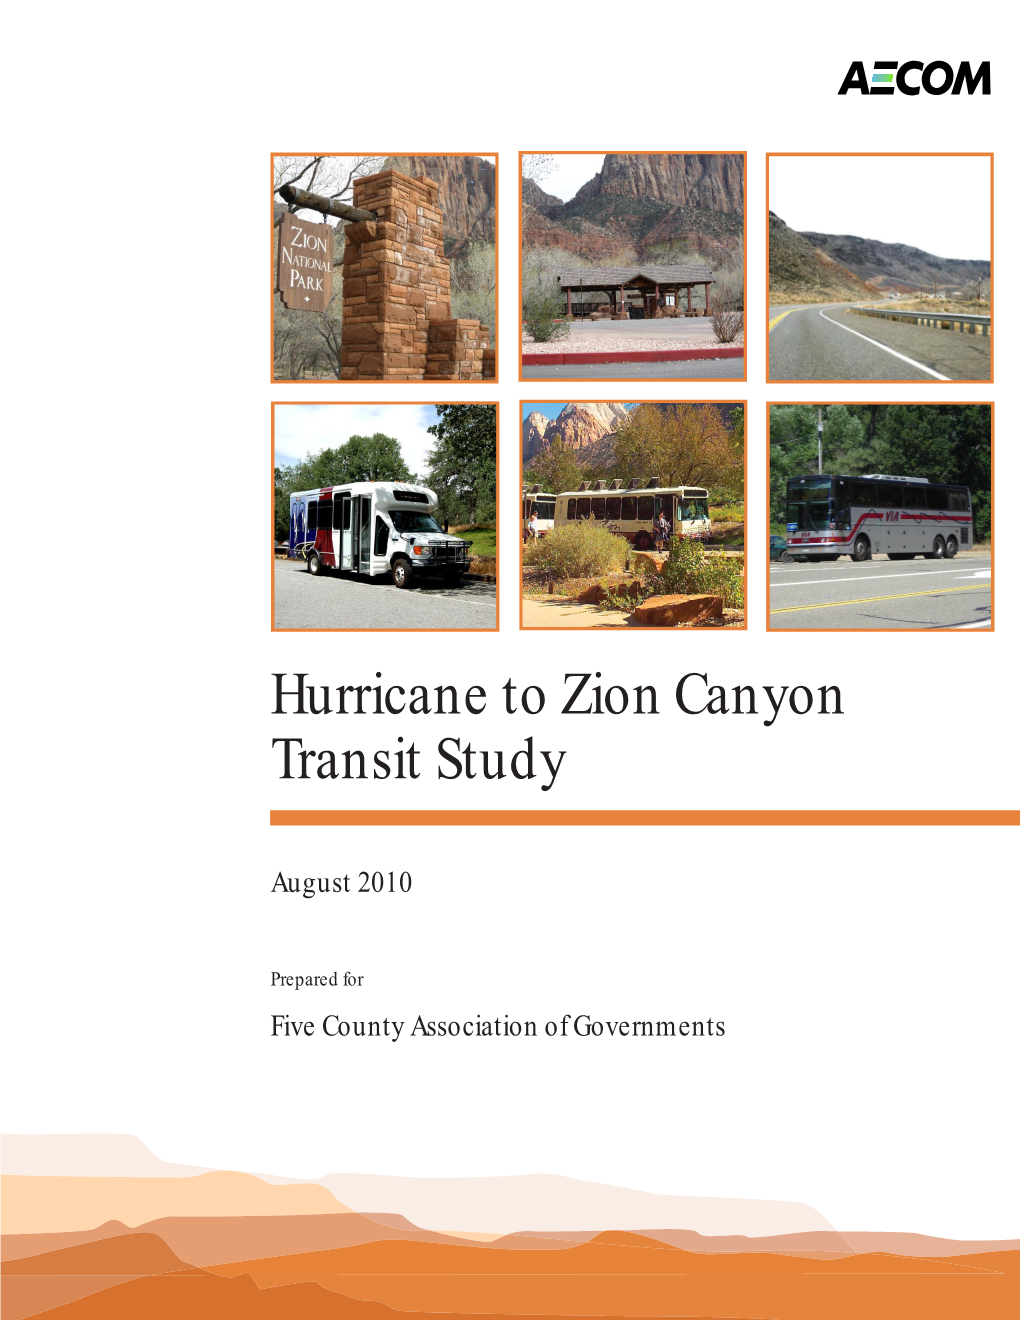 Hurricane to Zion Canyon Transit Study